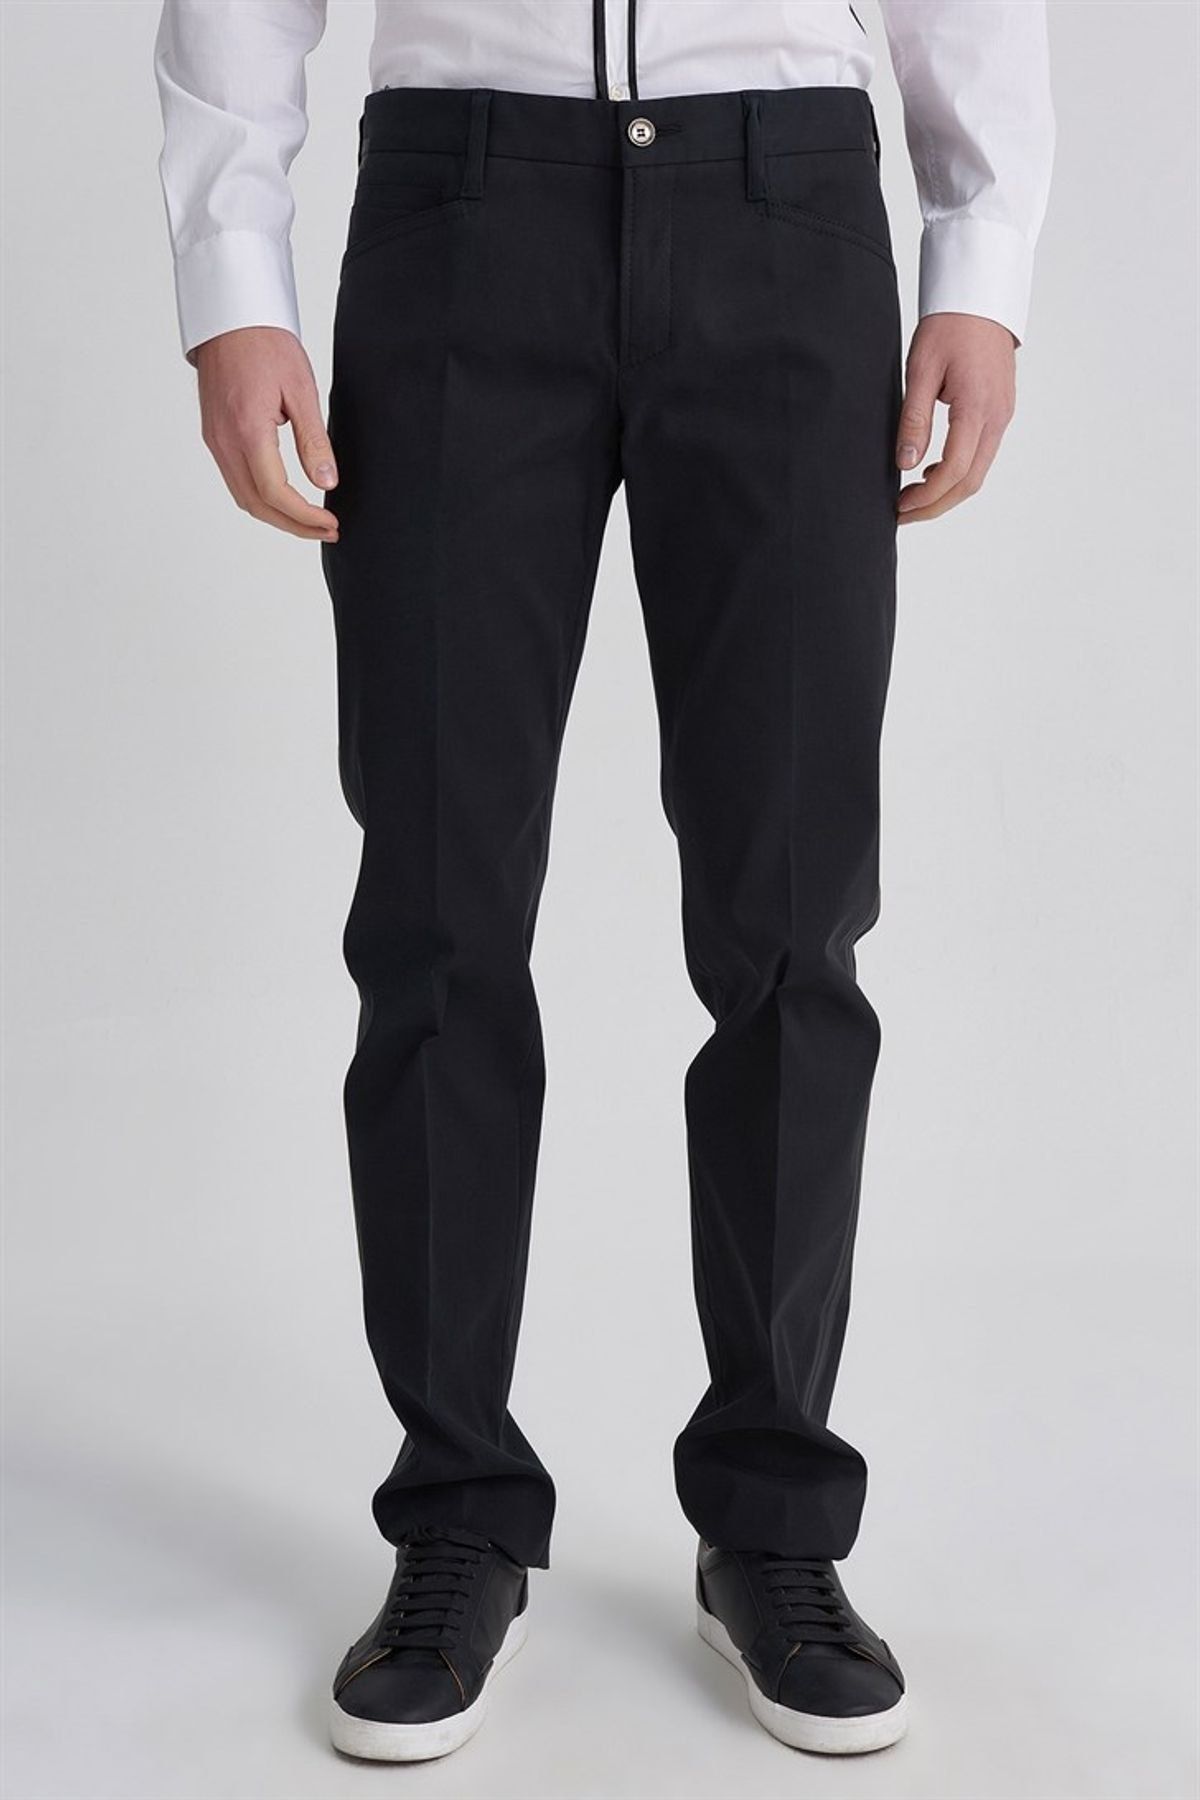 Versace Versus Normal Bel Erkek Kumaş Pantolon